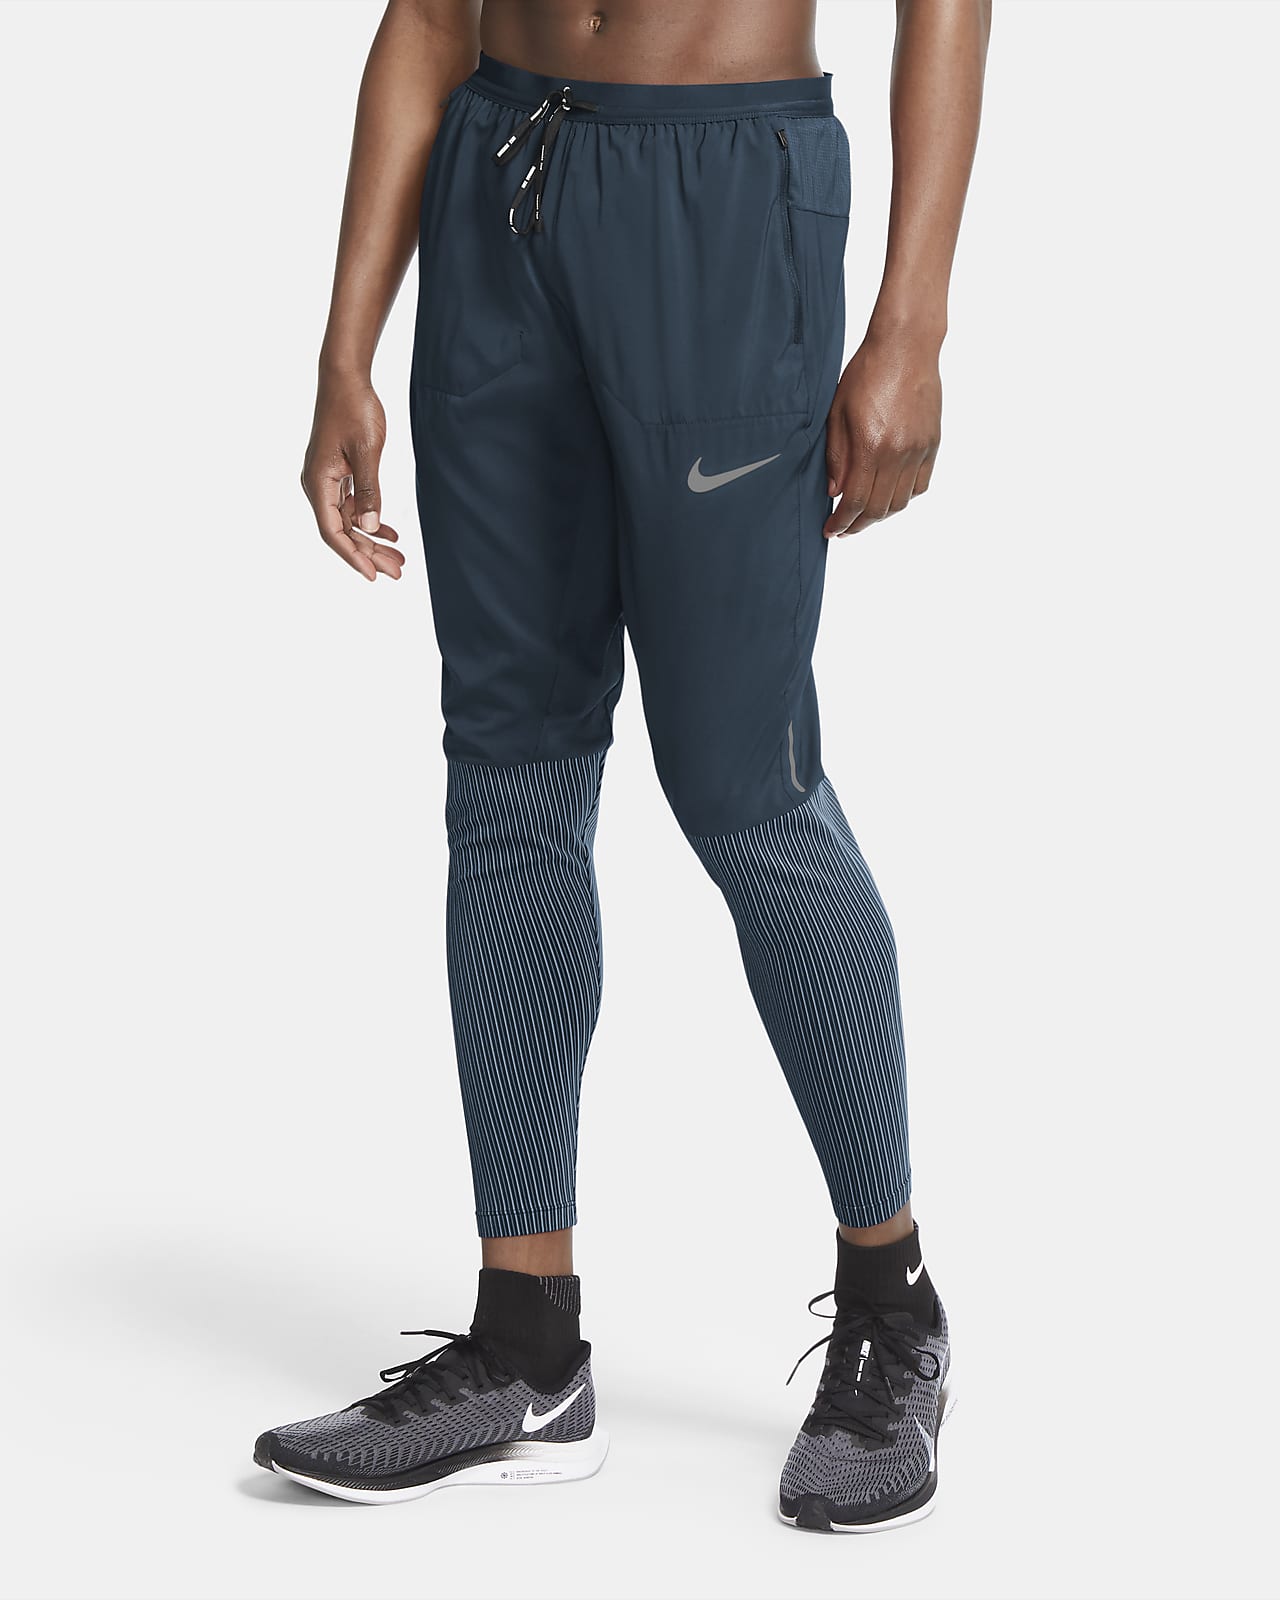 Pantalones de running híbridos para hombre Nike Phenom Elite Future Fast.  Nike.com